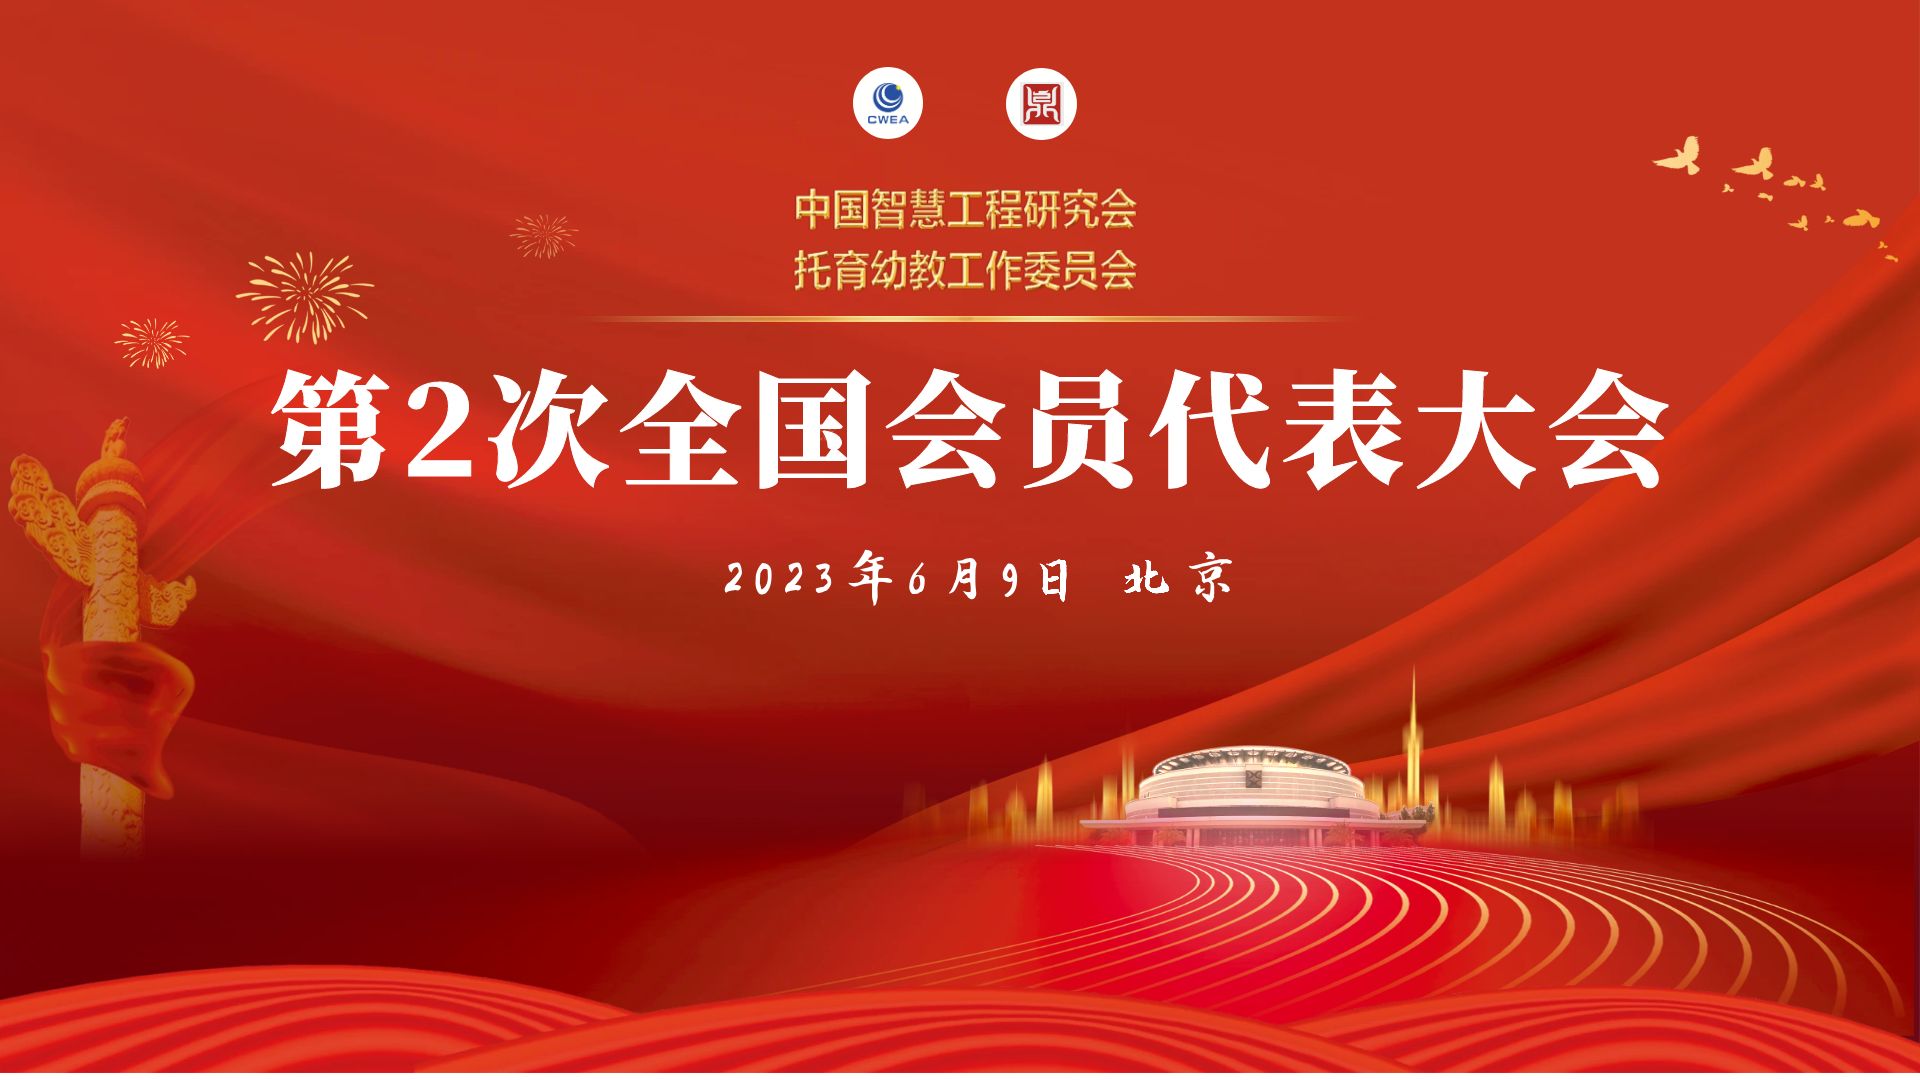 2023年6月9日，将在北京选举产生第一届理事会